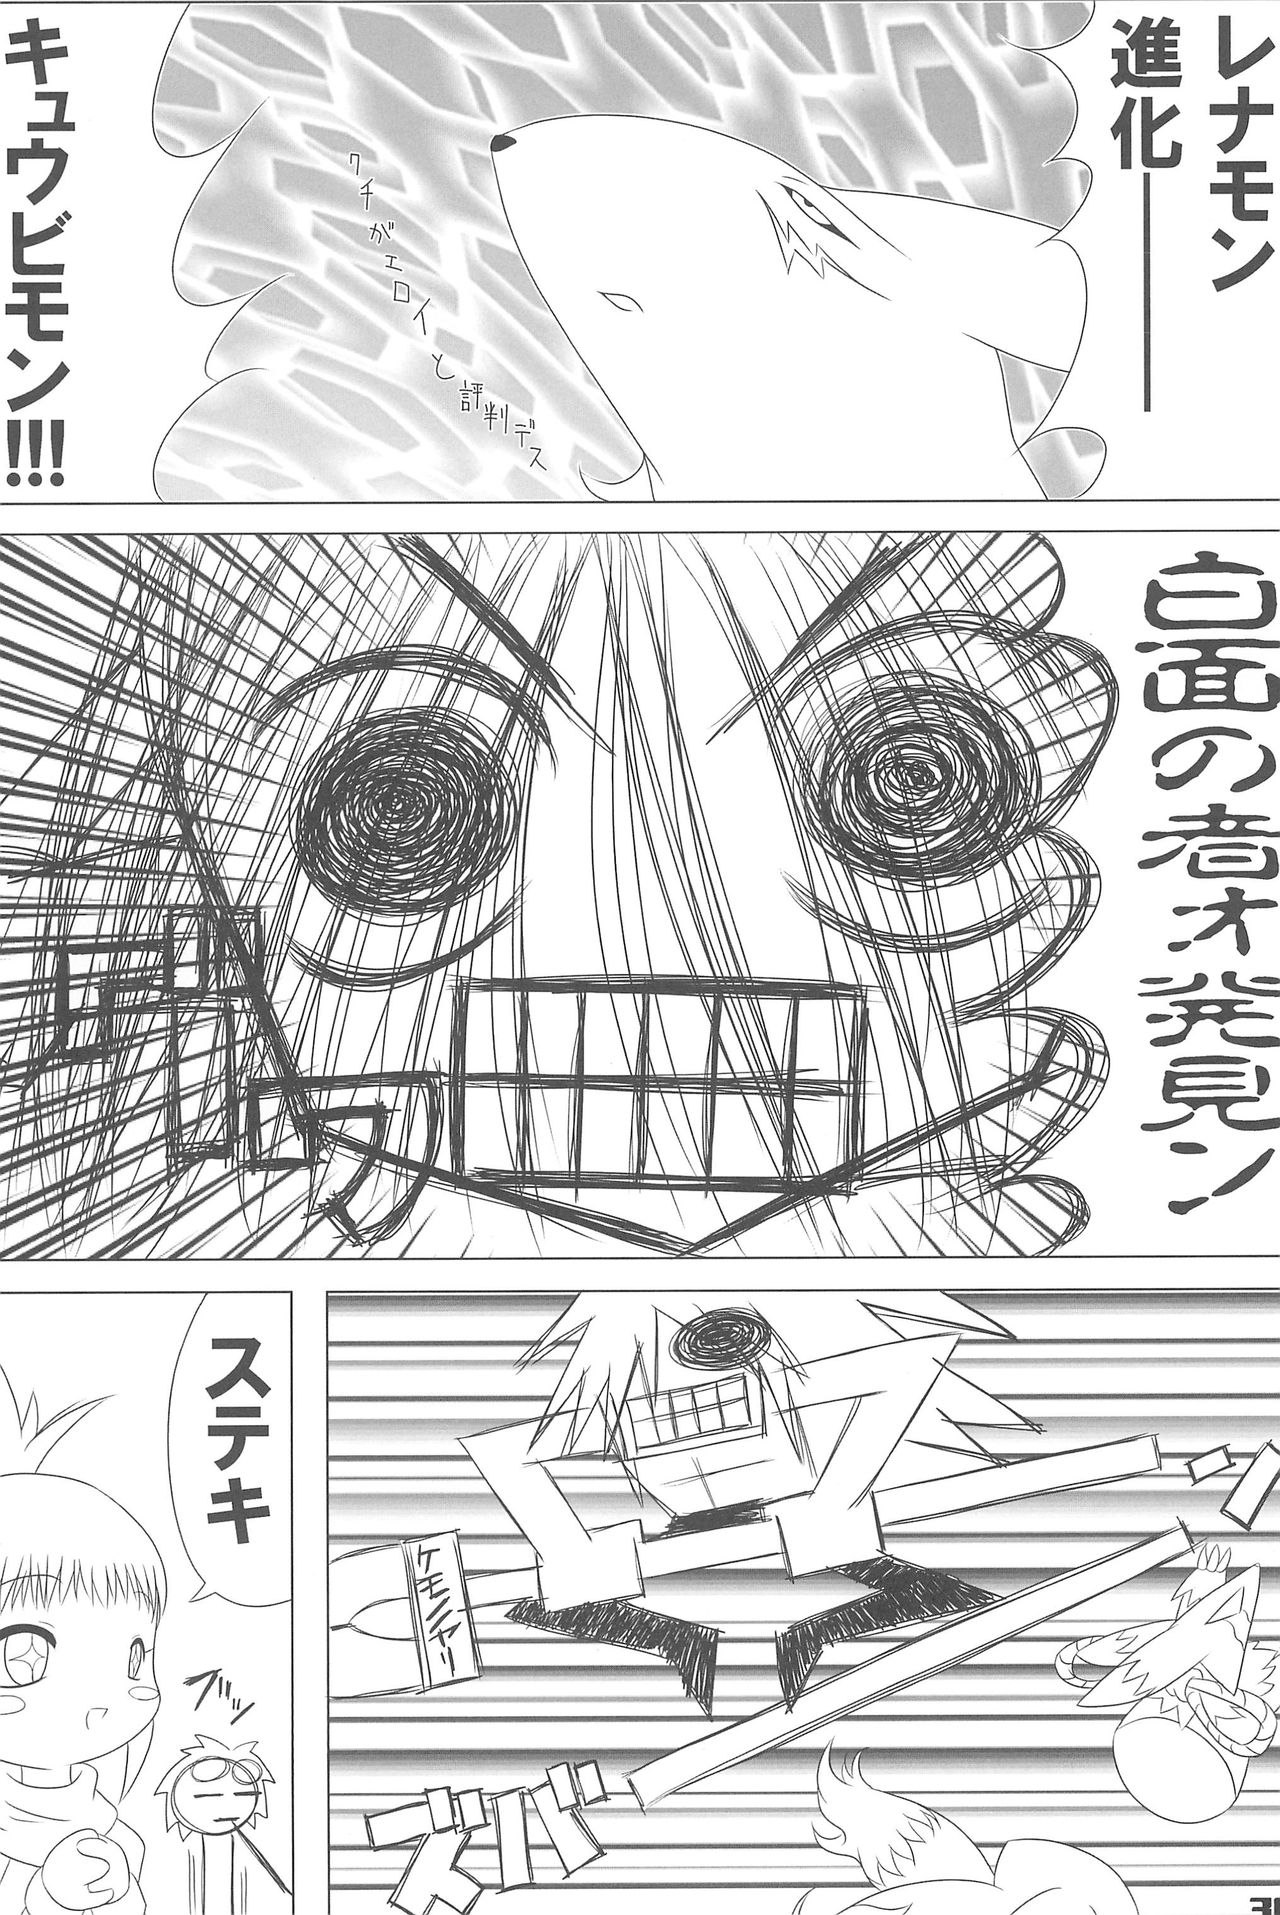 (Puniket 4) [hi_b (hb)] MILKY SHAKE (Digimon Tamers) page 30 full